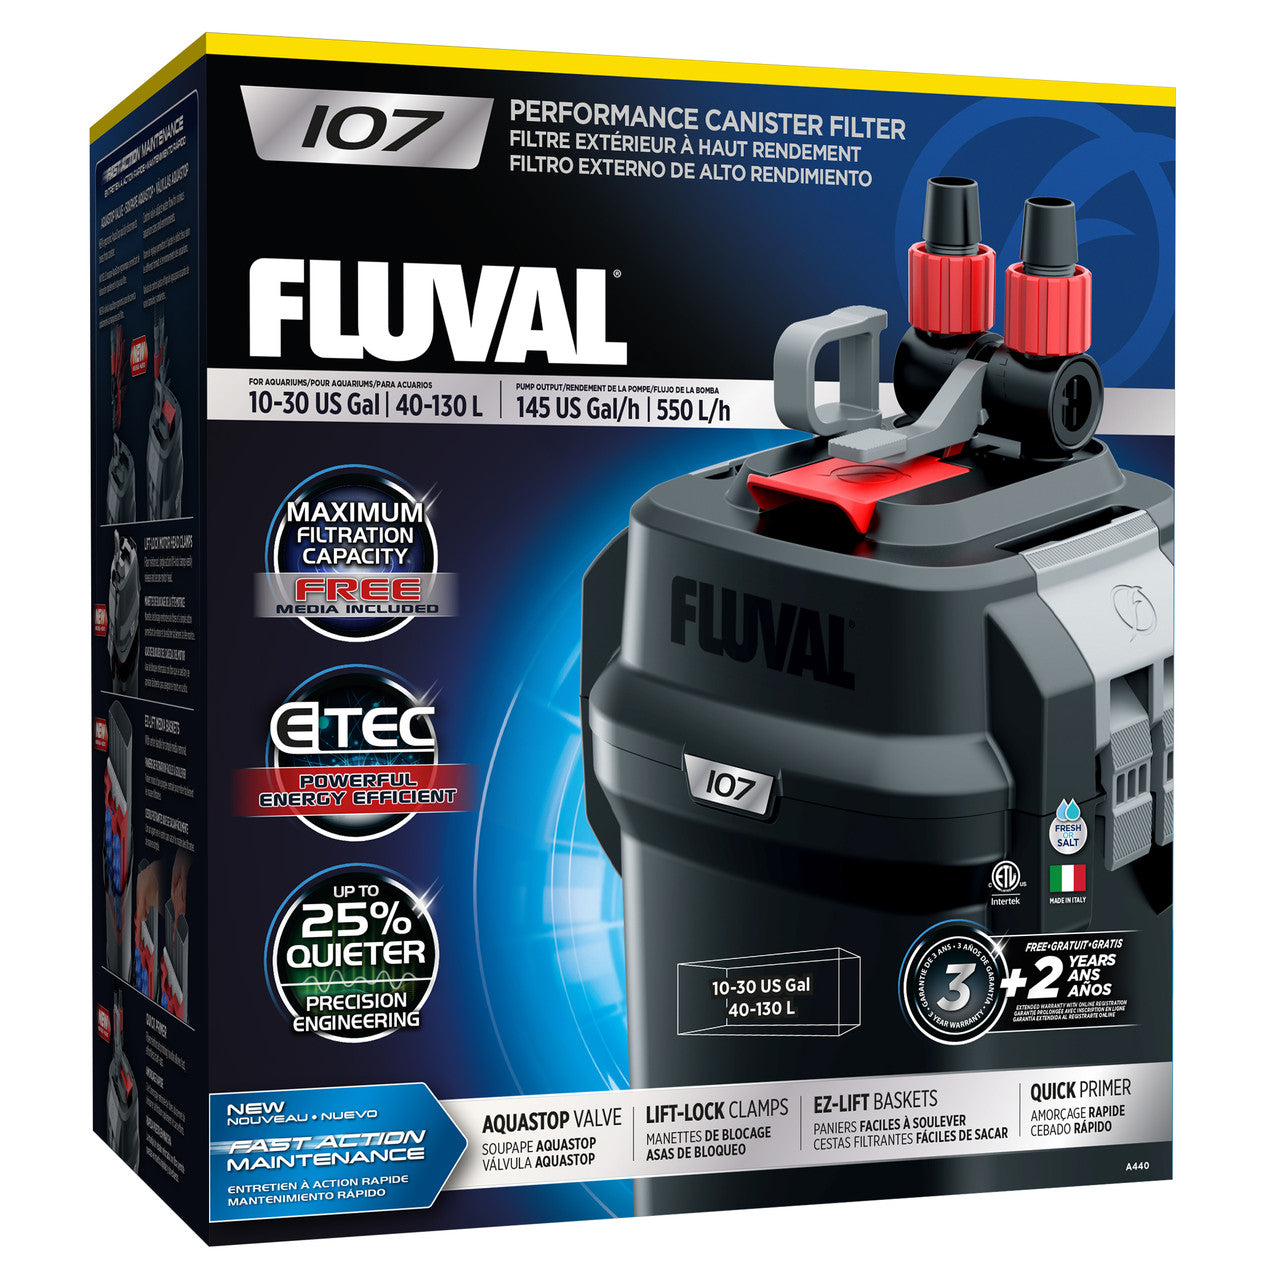 Fluval 107 External Filter 015561104401